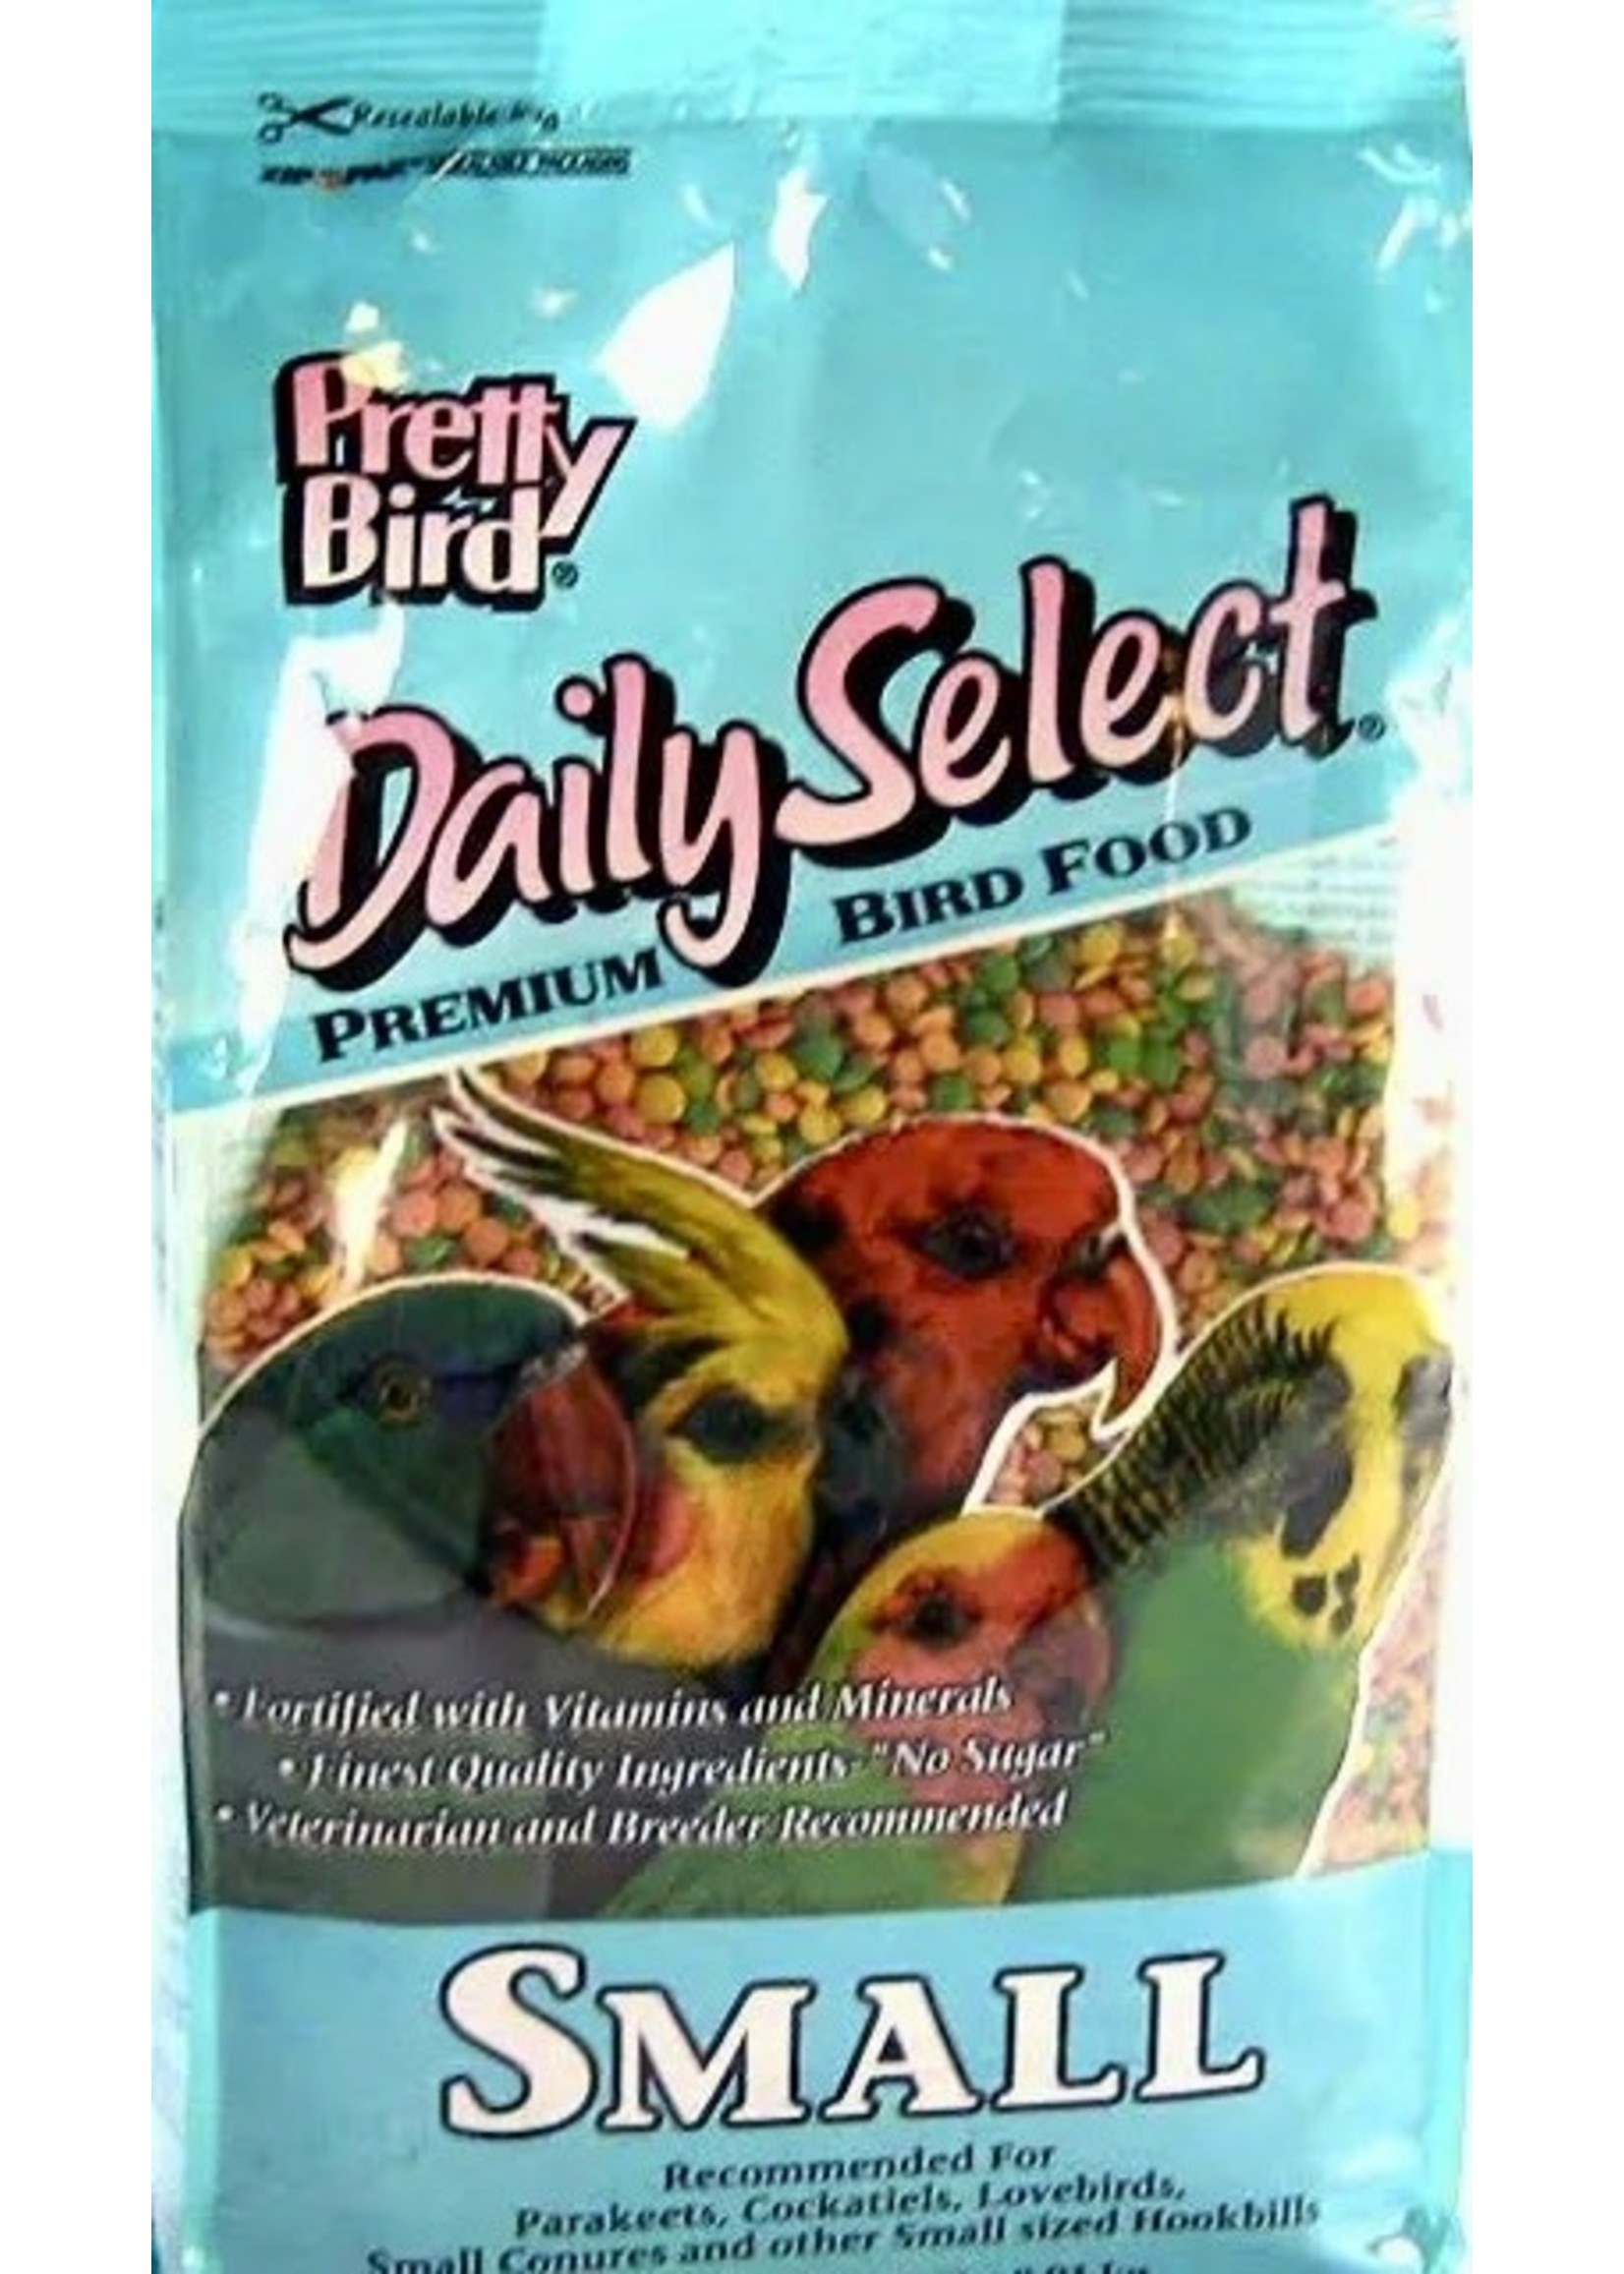 Pretty Bird Pretty Bird Daily Select Small 20lb